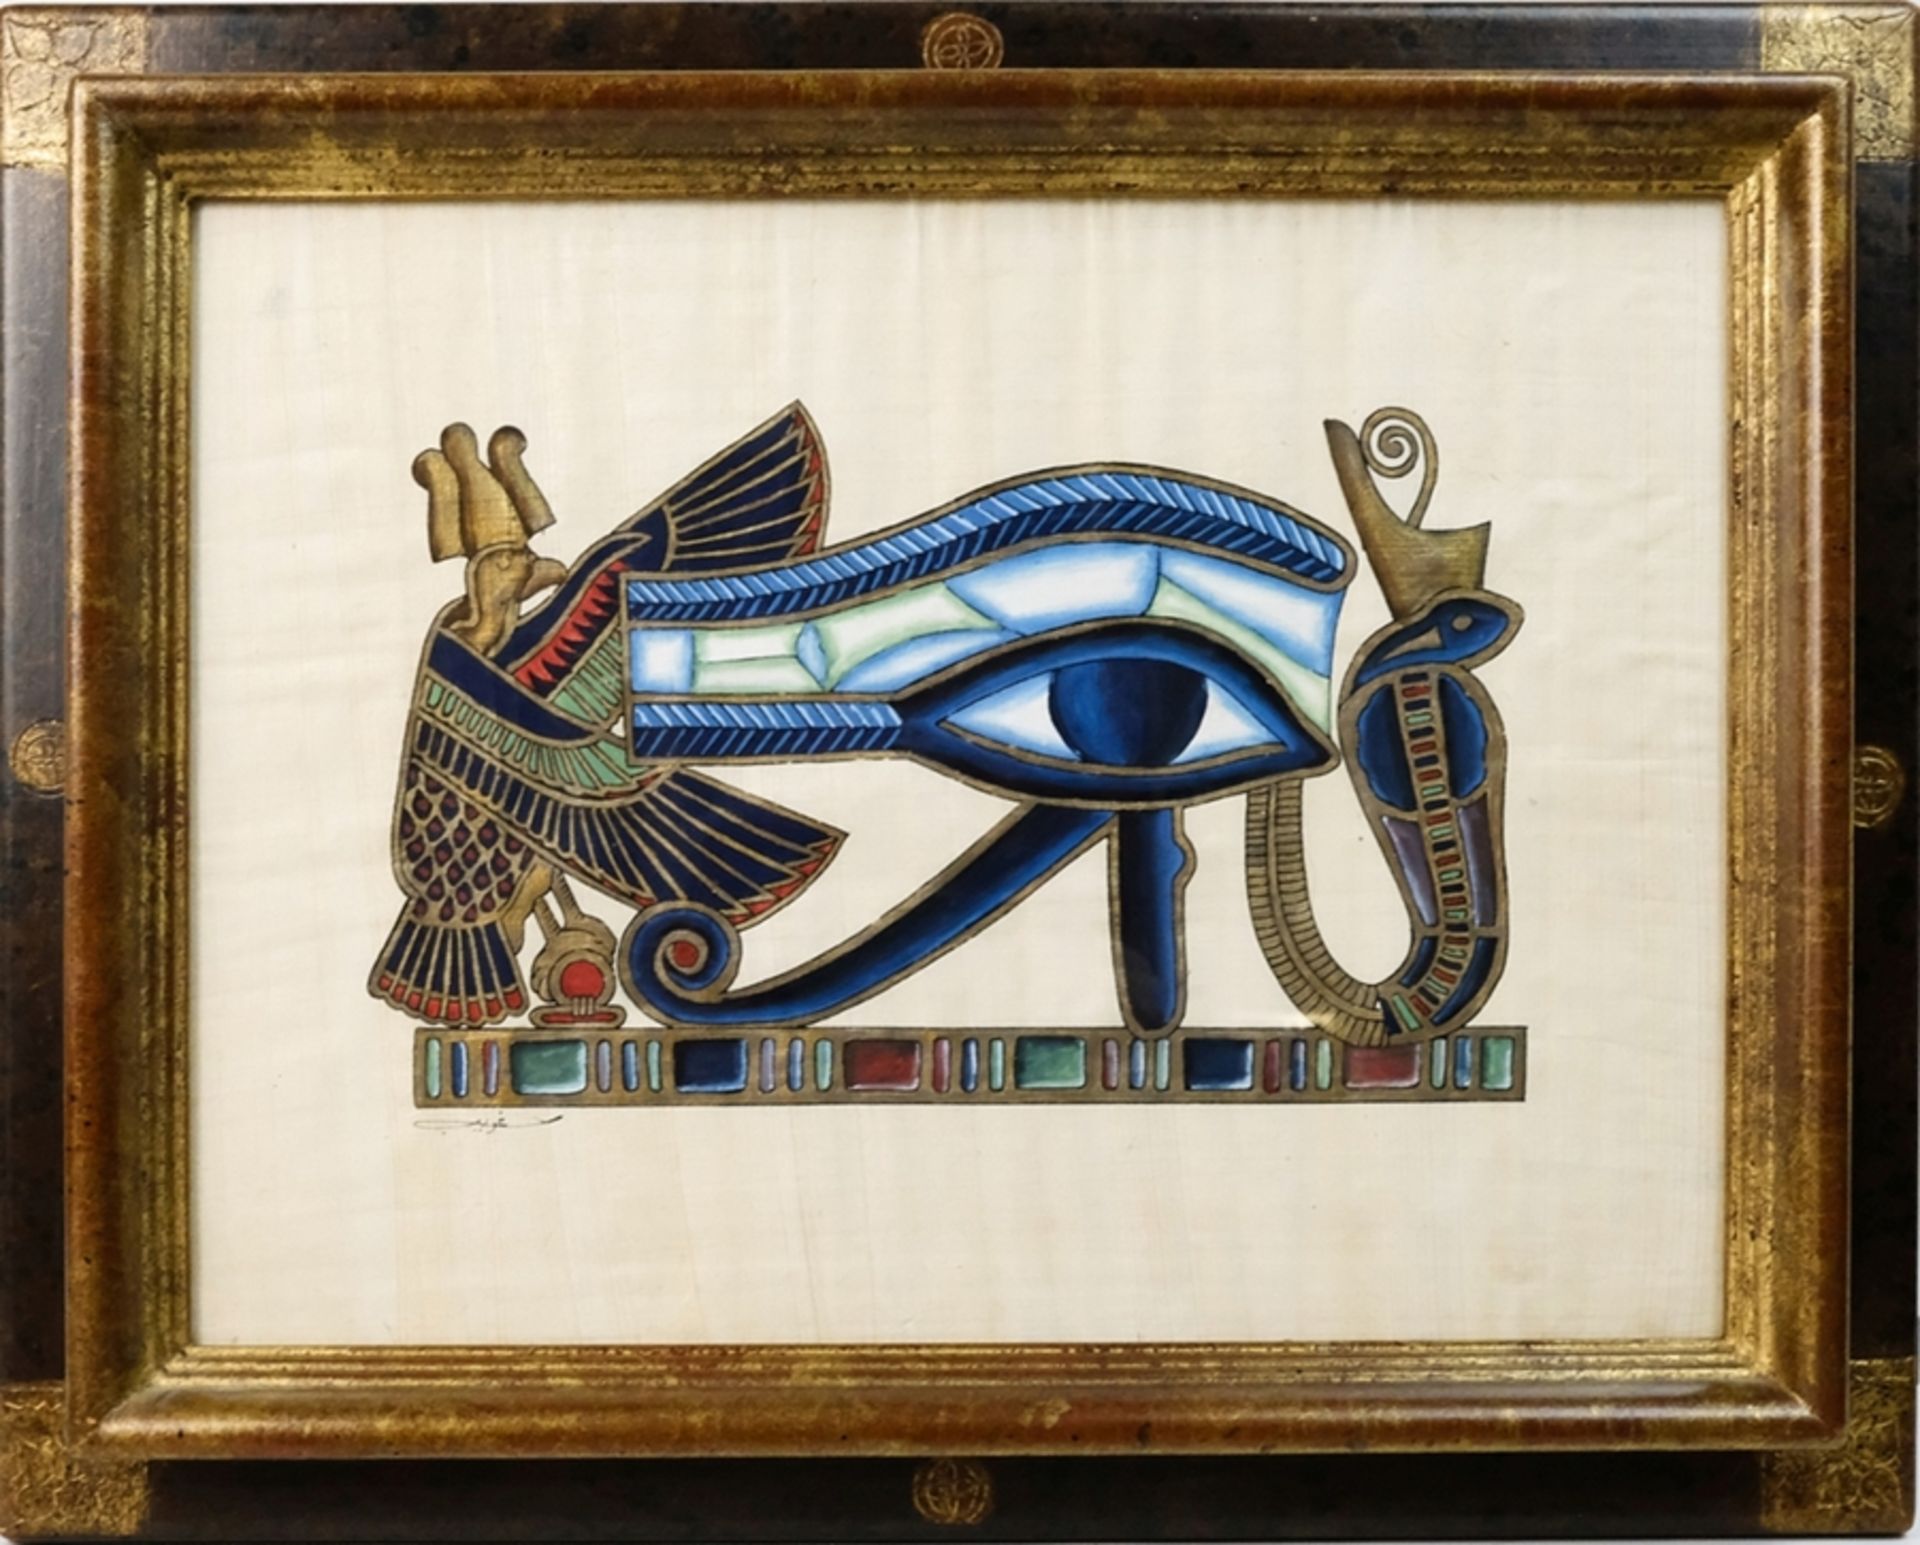 Unbekannt (20. Jahrhundert) Auge des Horus, Deckfarben und Goldfarbe auf Papyrus. - Bild 2 aus 3